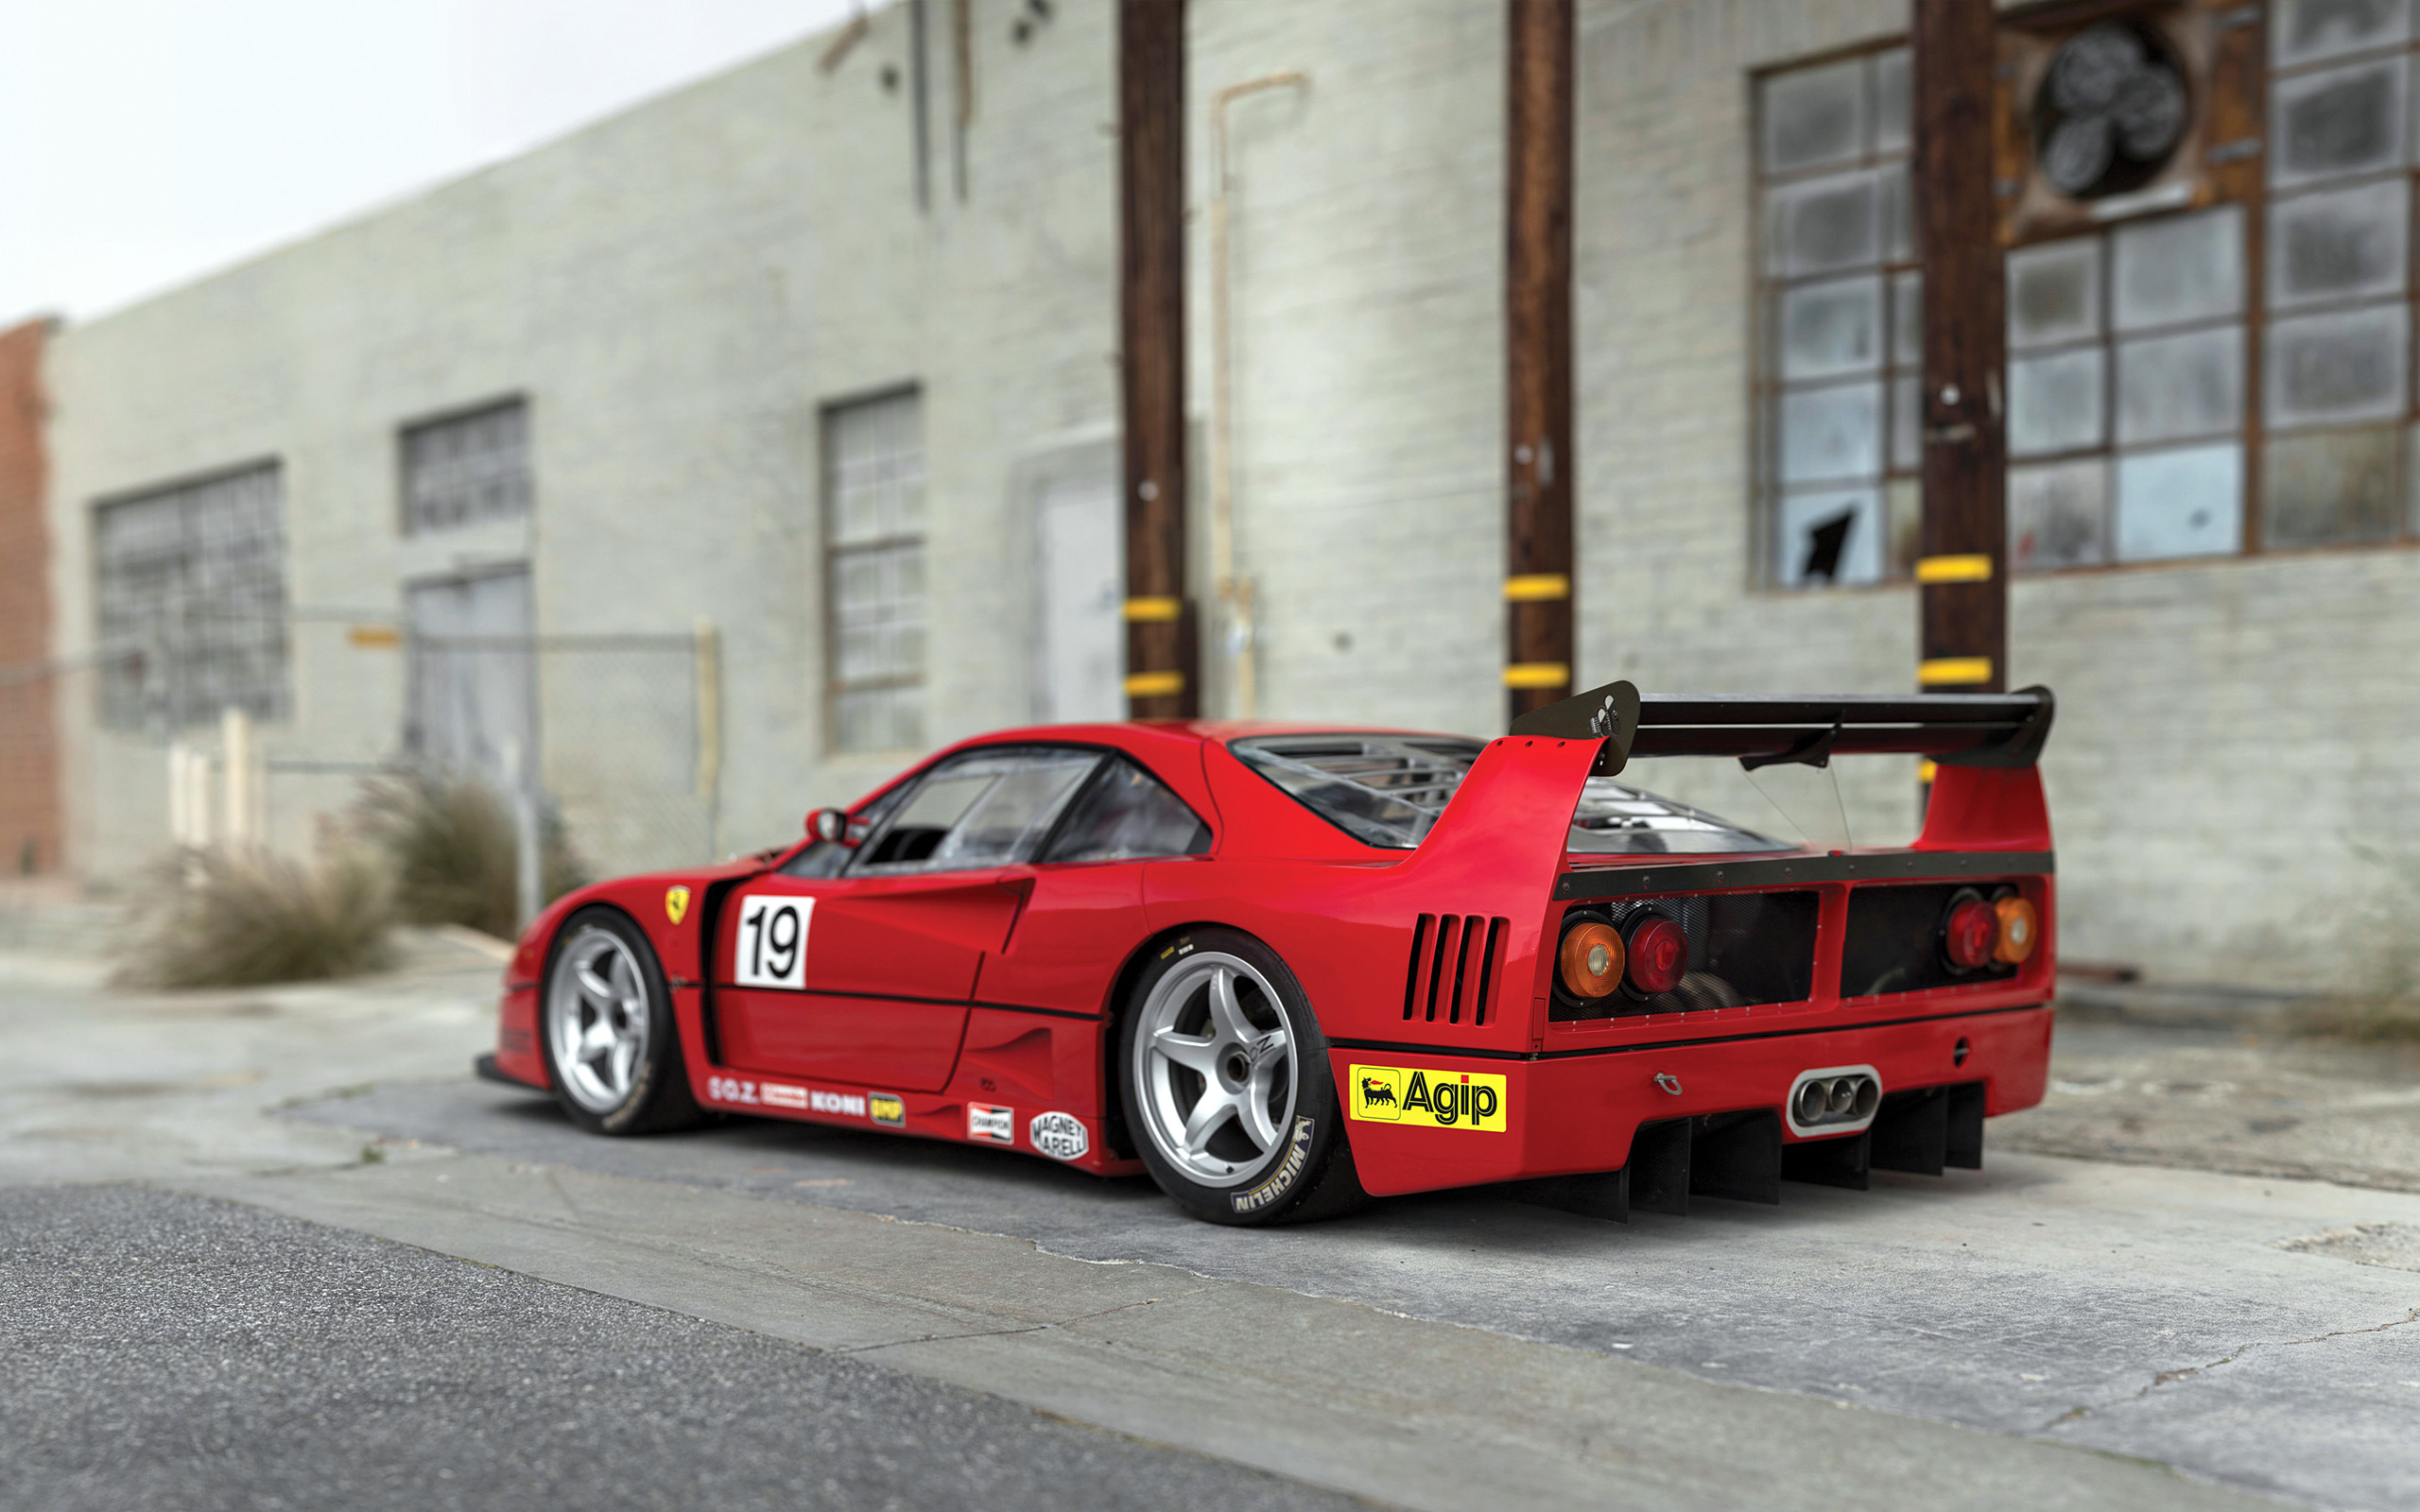  1989 Ferrari F40 LM Wallpaper.